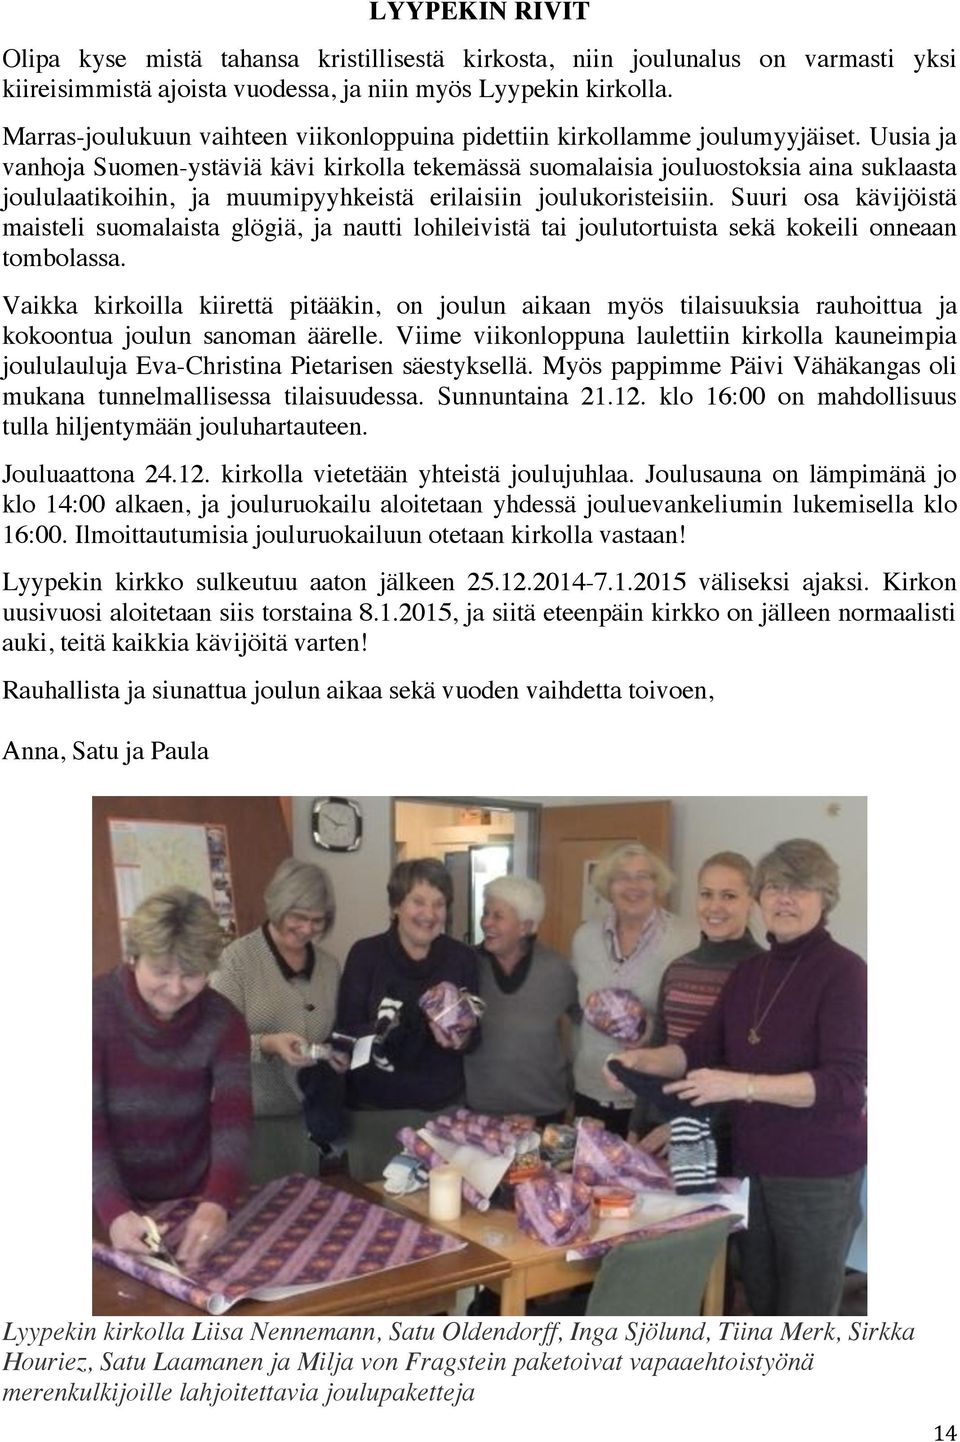 Uusia ja vanhoja Suomen-ystäviä kävi kirkolla tekemässä suomalaisia jouluostoksia aina suklaasta joululaatikoihin, ja muumipyyhkeistä erilaisiin joulukoristeisiin.